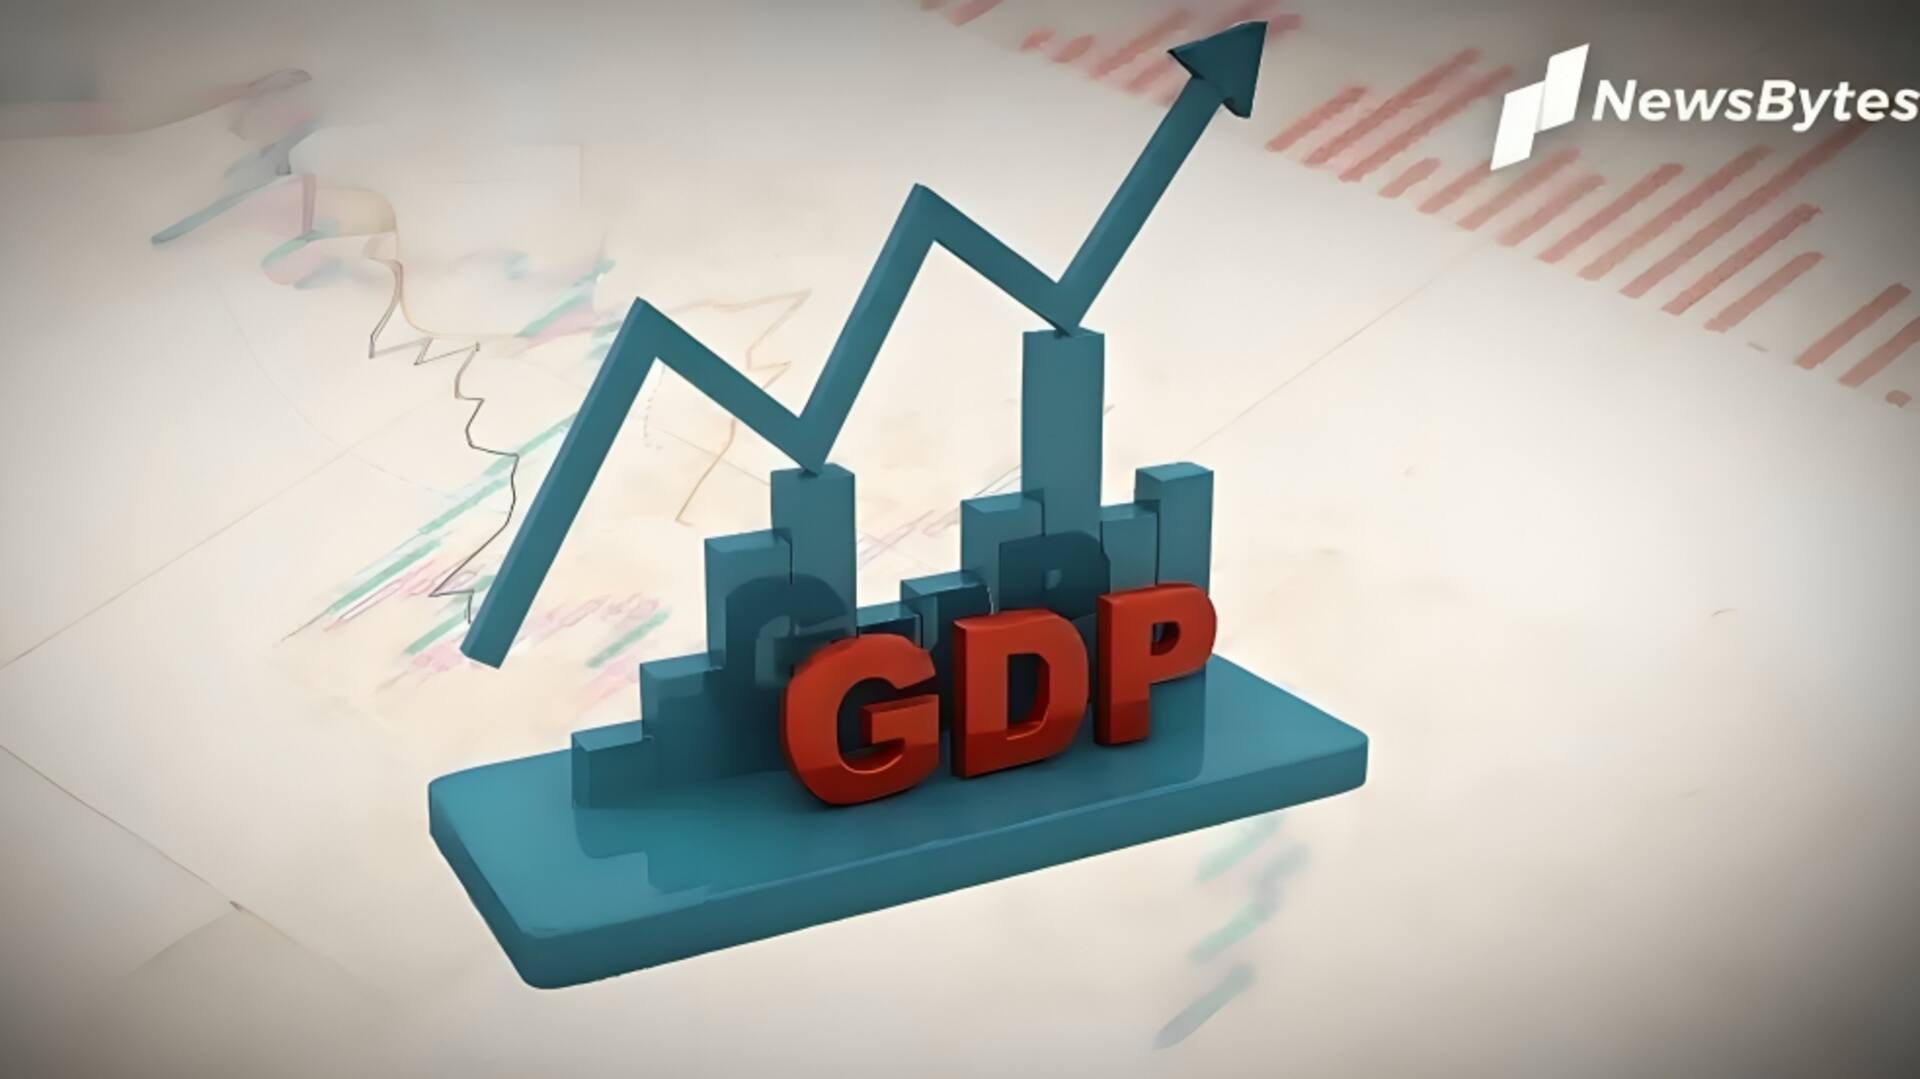 RBI ने मौजूदा वित्तीय वर्ष में GDP विकास दर 7 प्रतिशत रहने का अनुमान जताया